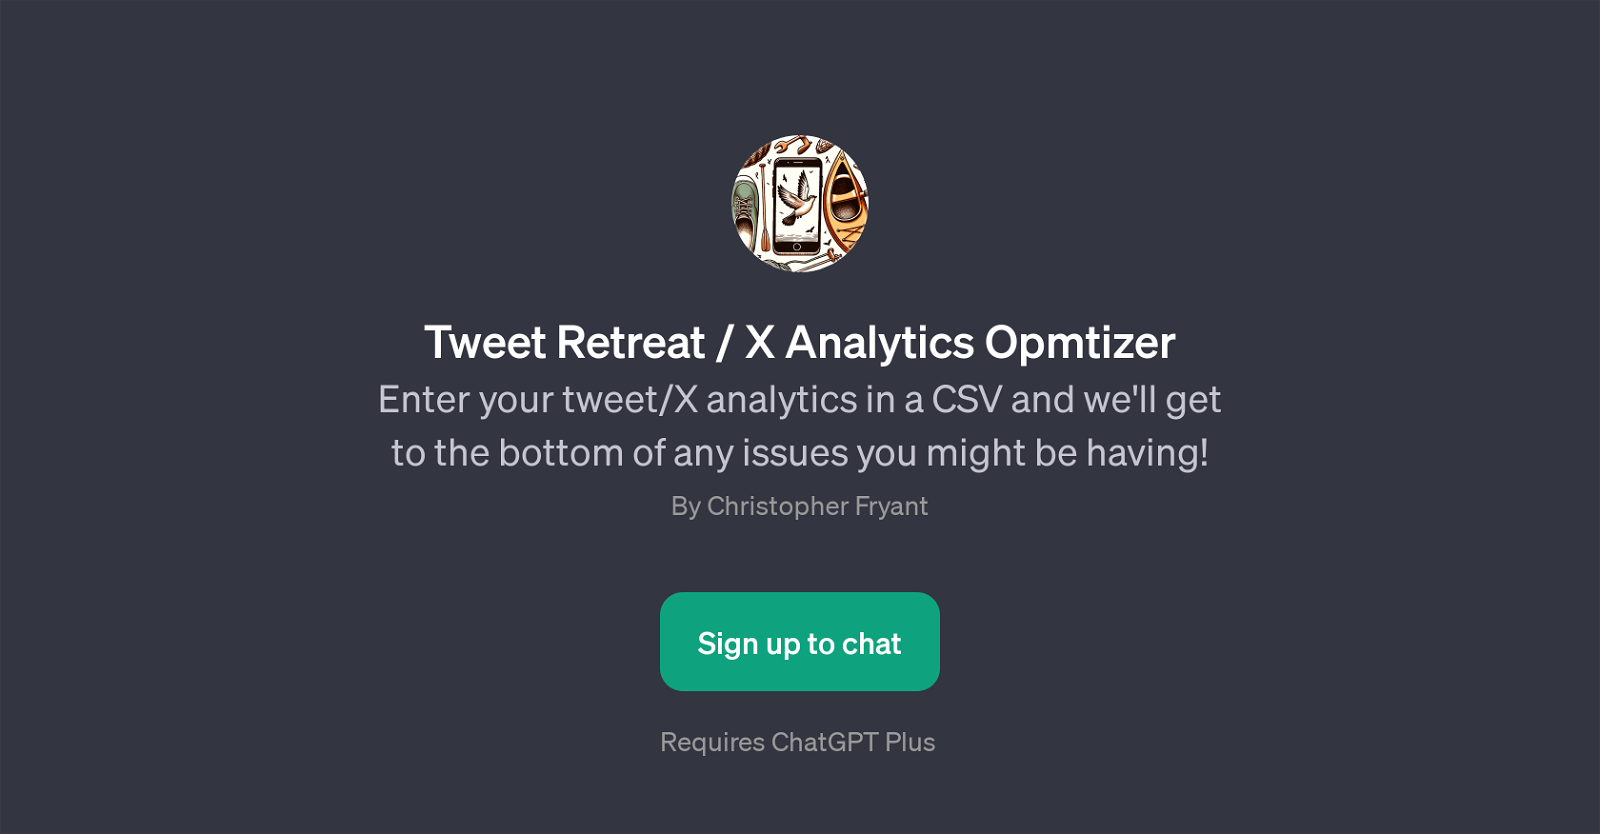 Tweet Retreat / X Analytics Opmtizer website